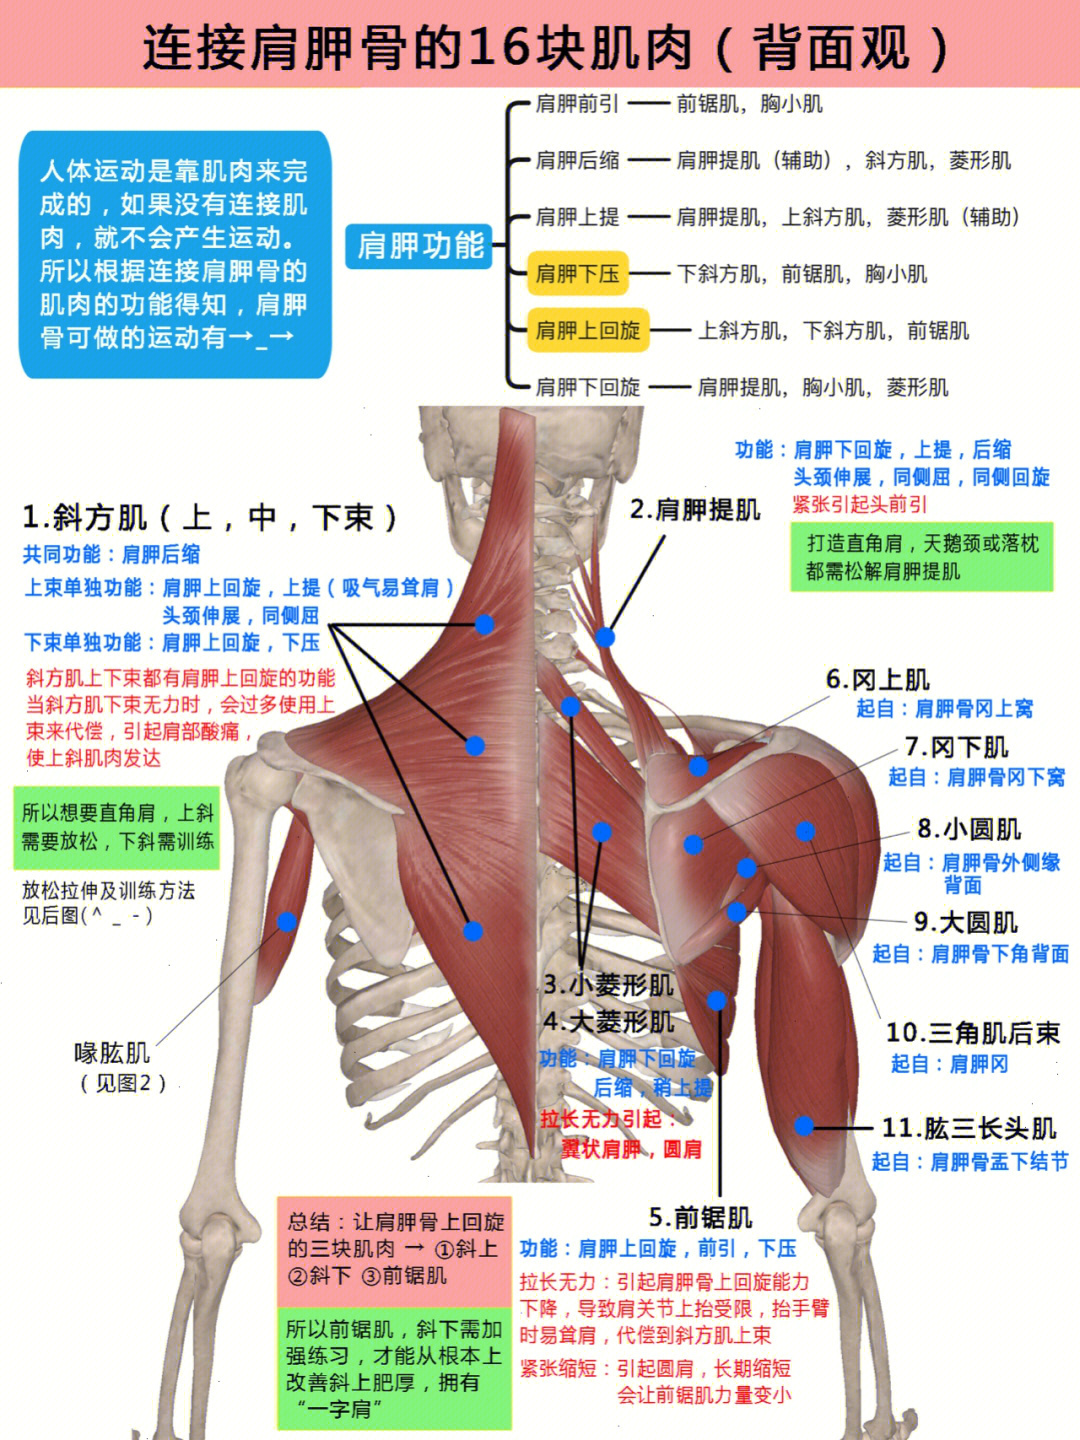 肩颈结构示意图图片